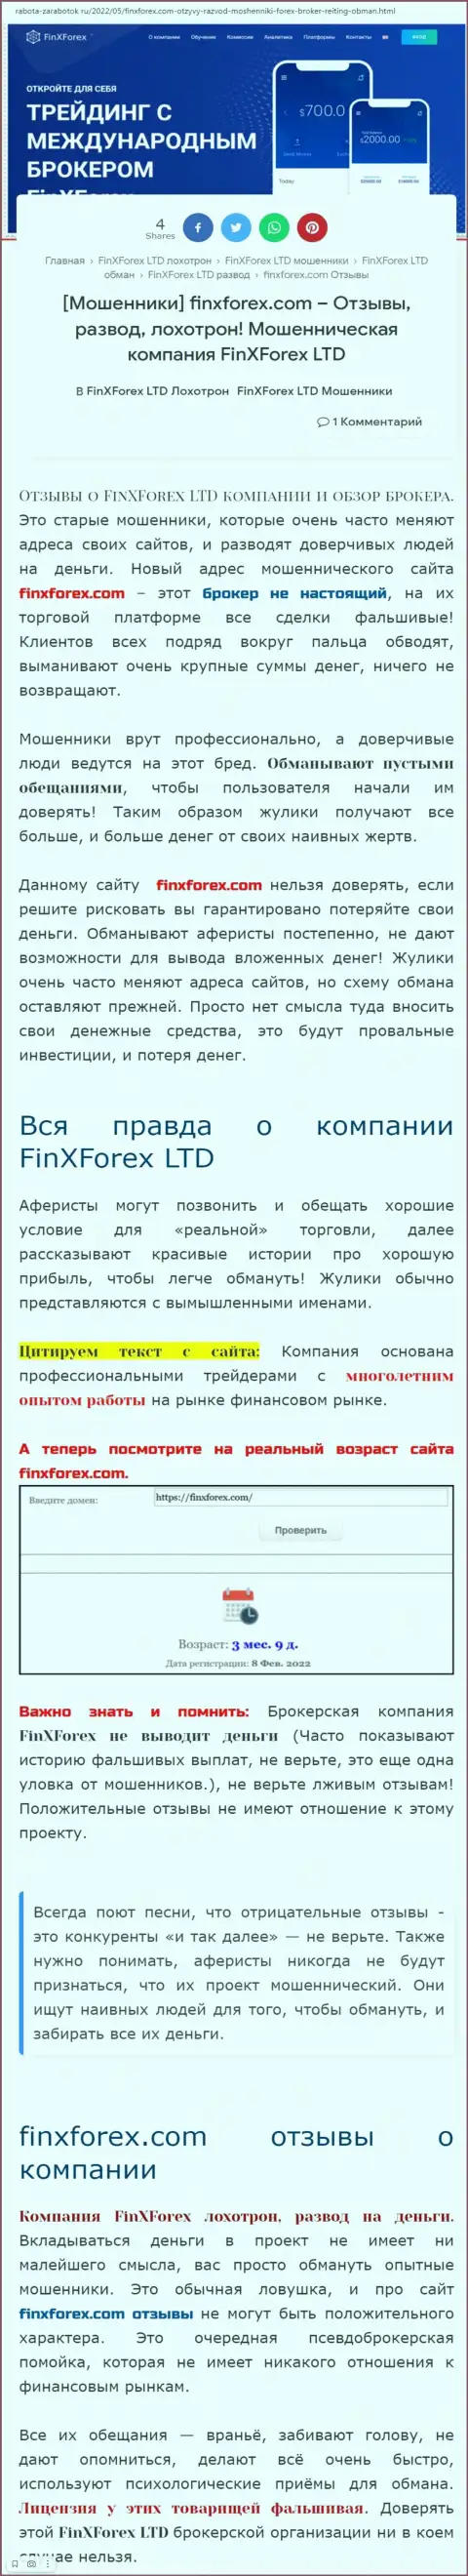 Автор обзора о FinXForex LTD говорит, что в компании FinXForex дурачат